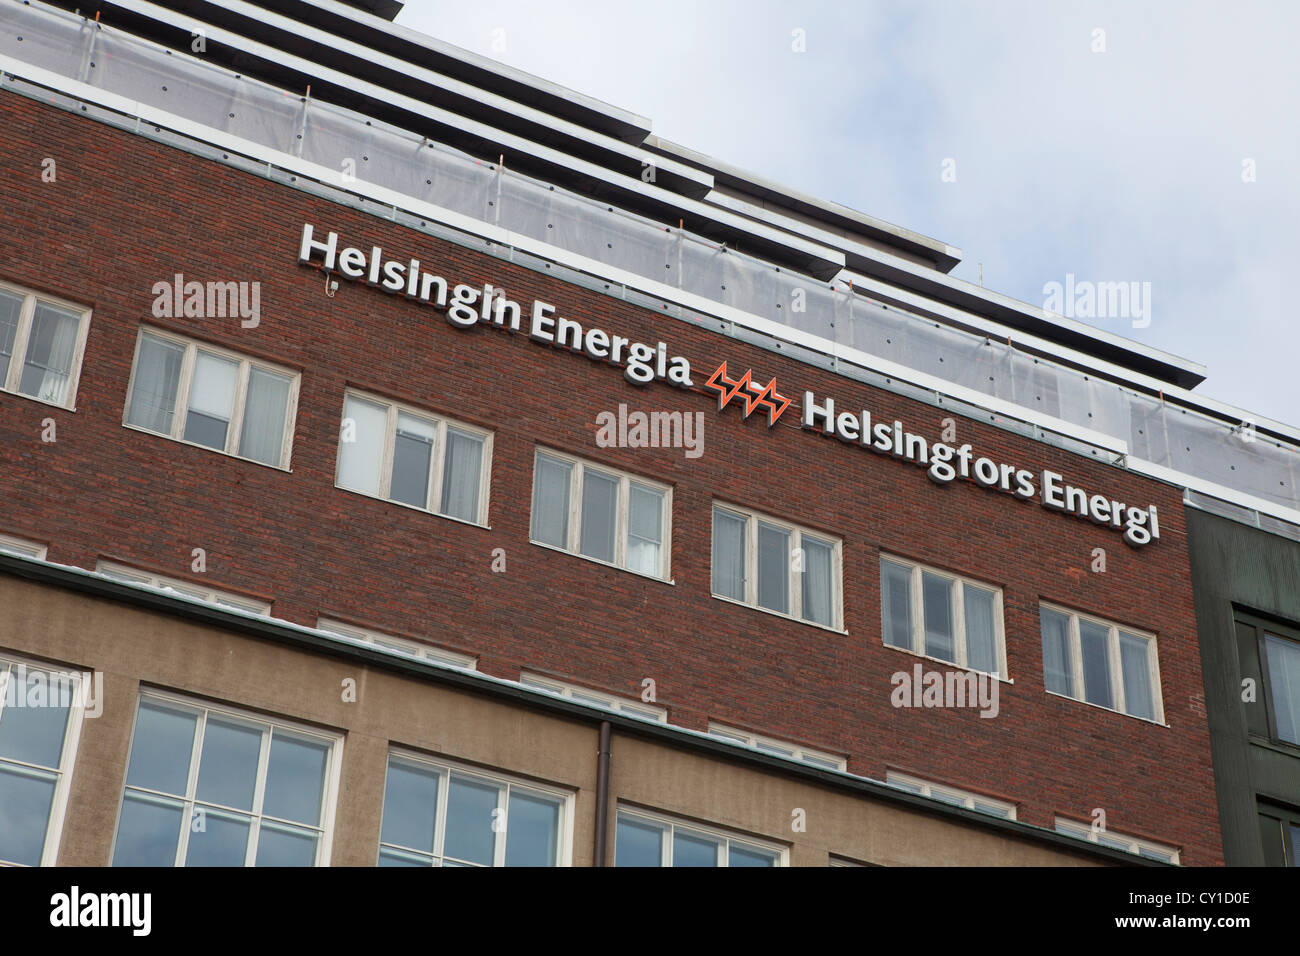 Helsinki energy company Foto Stock